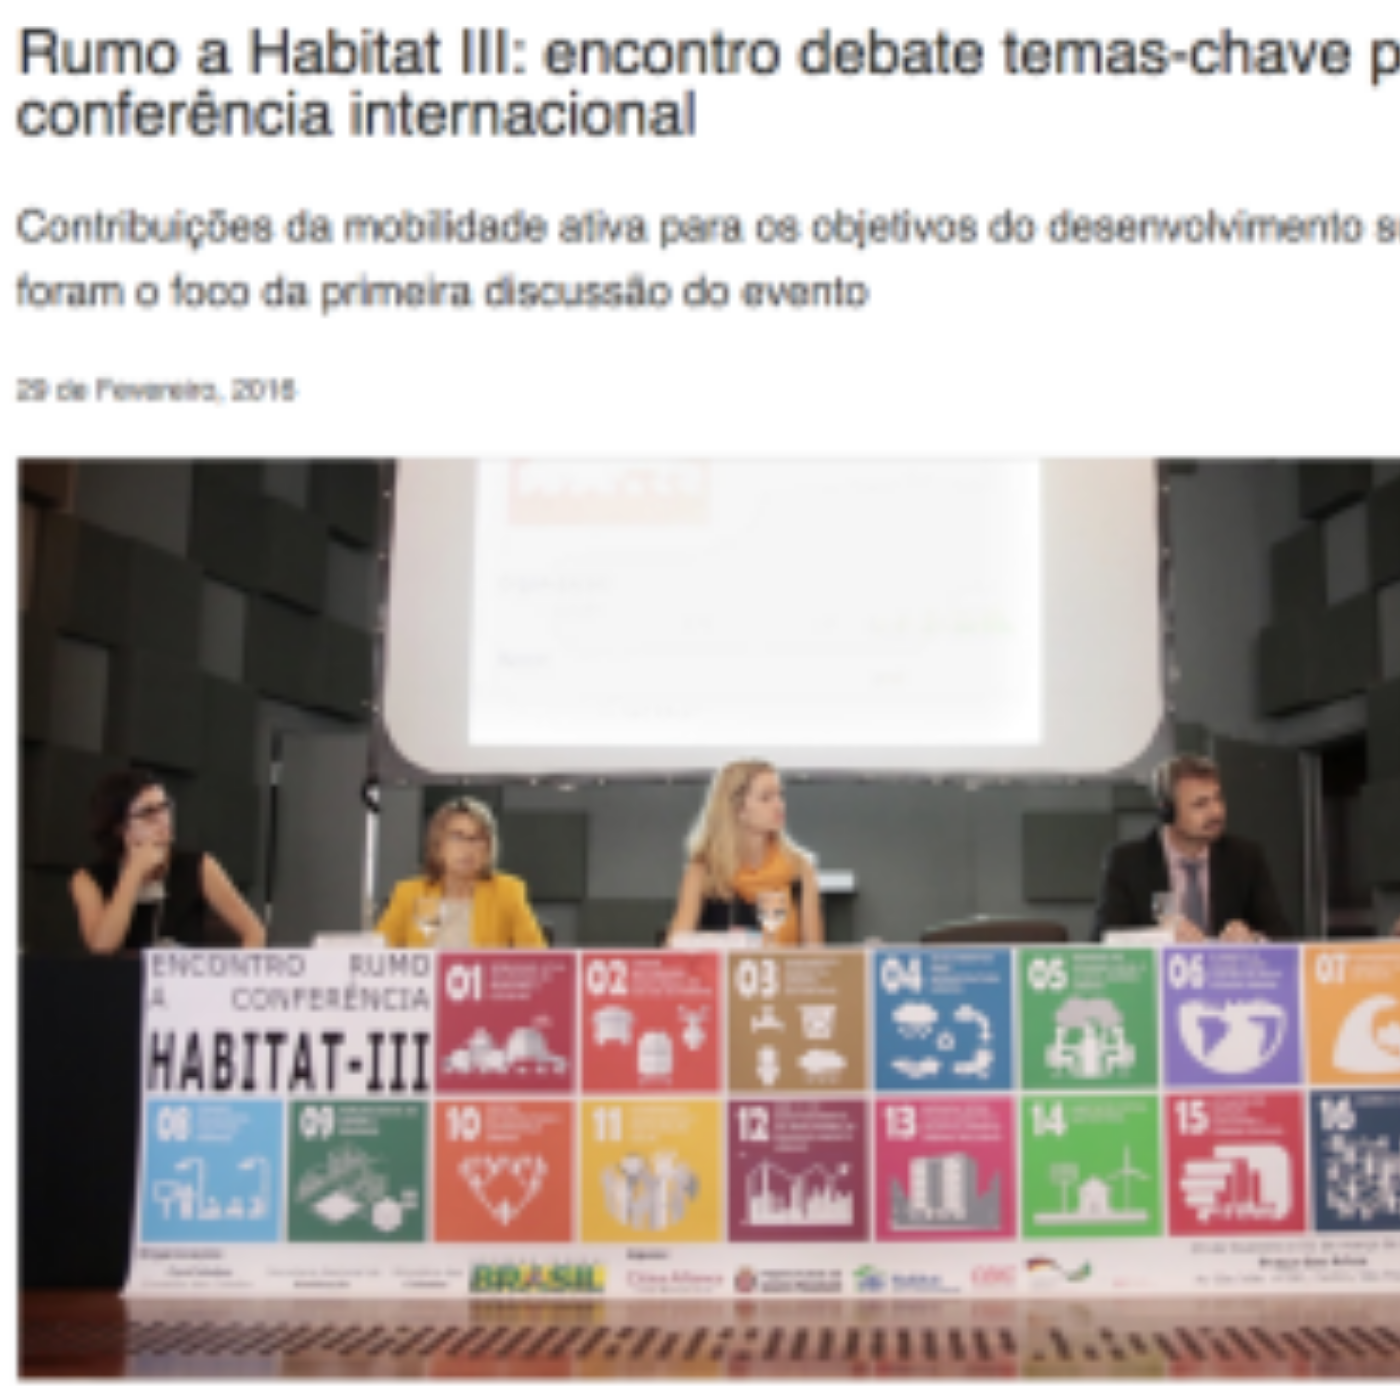 Rumo a Habitat III: encontro debate temas-chave para a conferência internacional